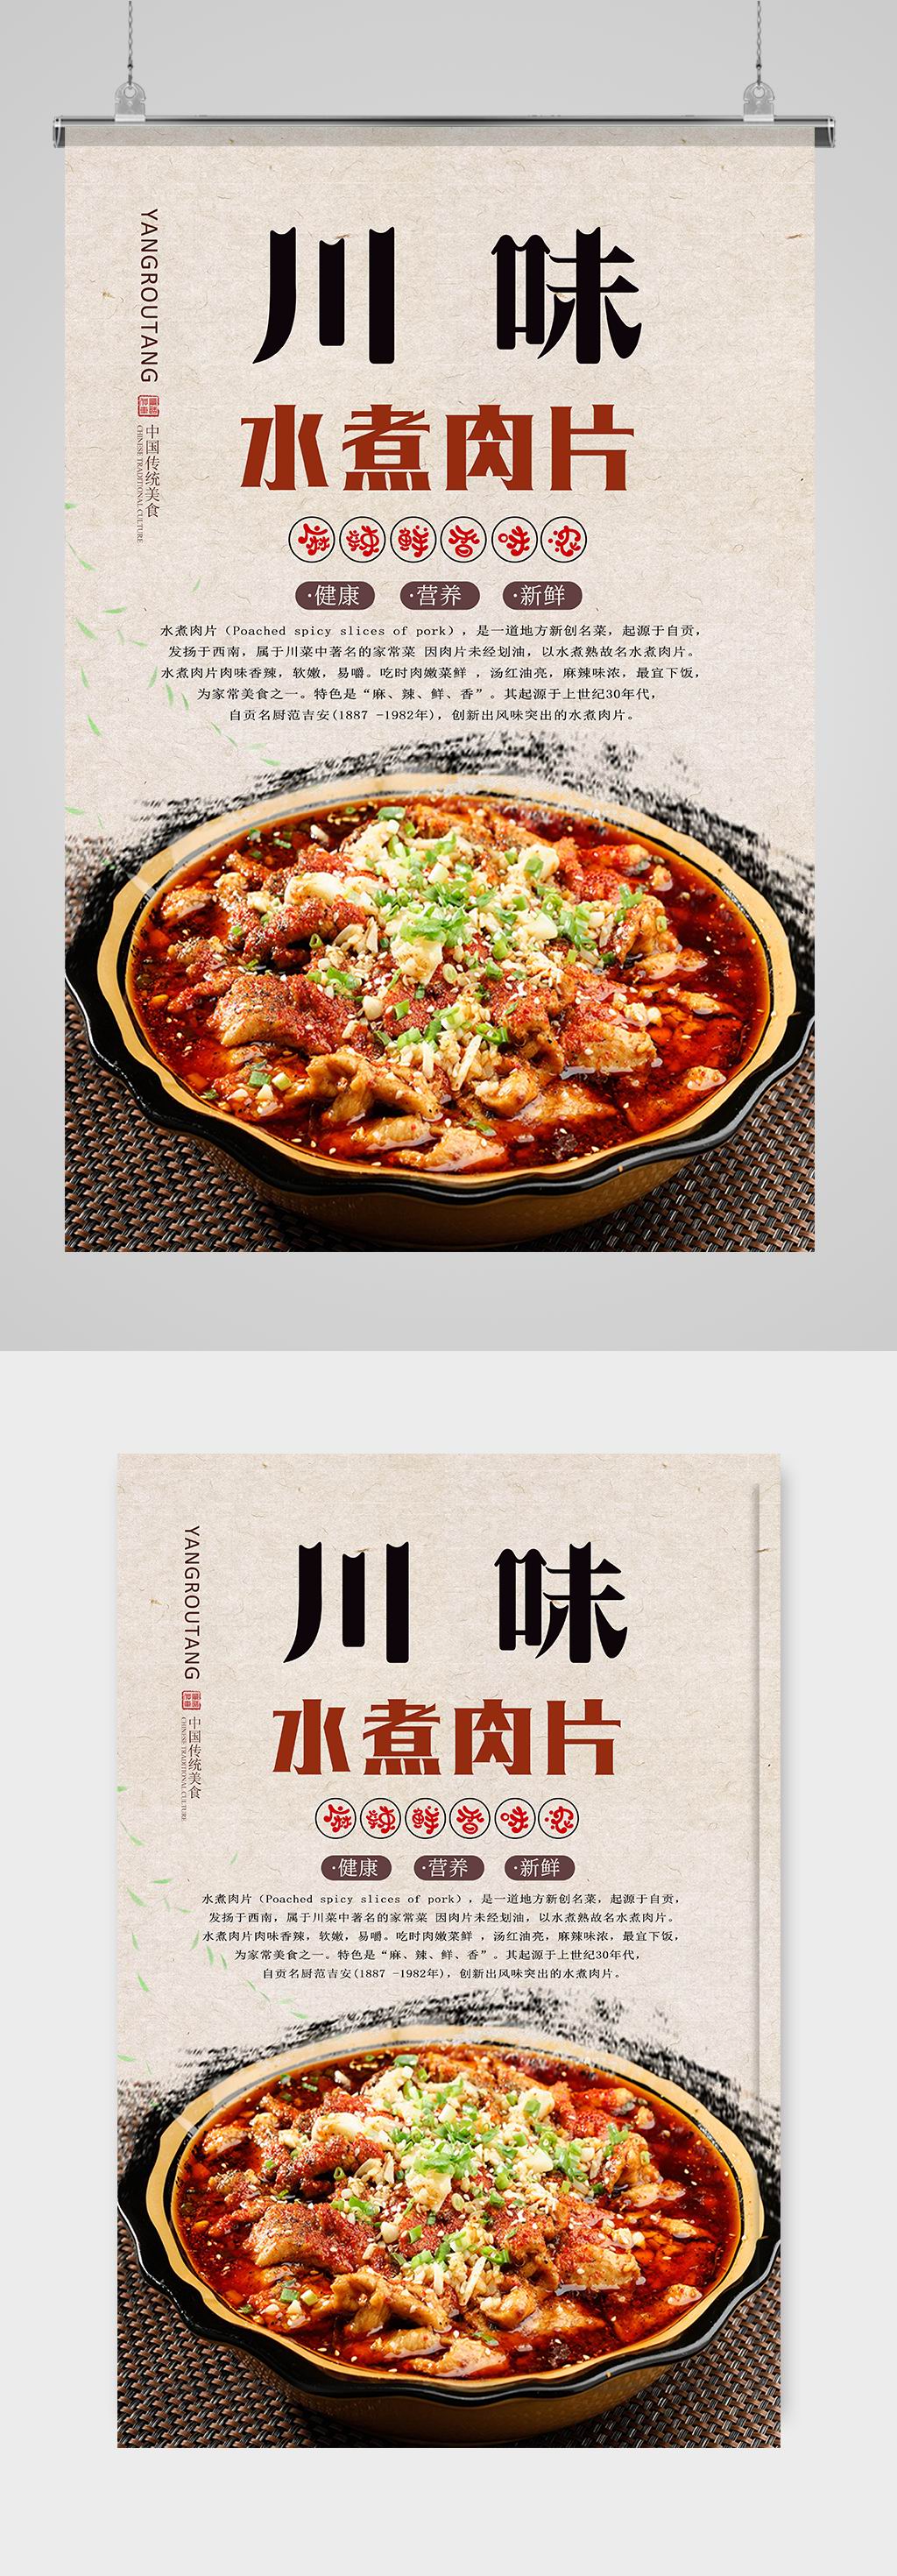 川菜广告语图片